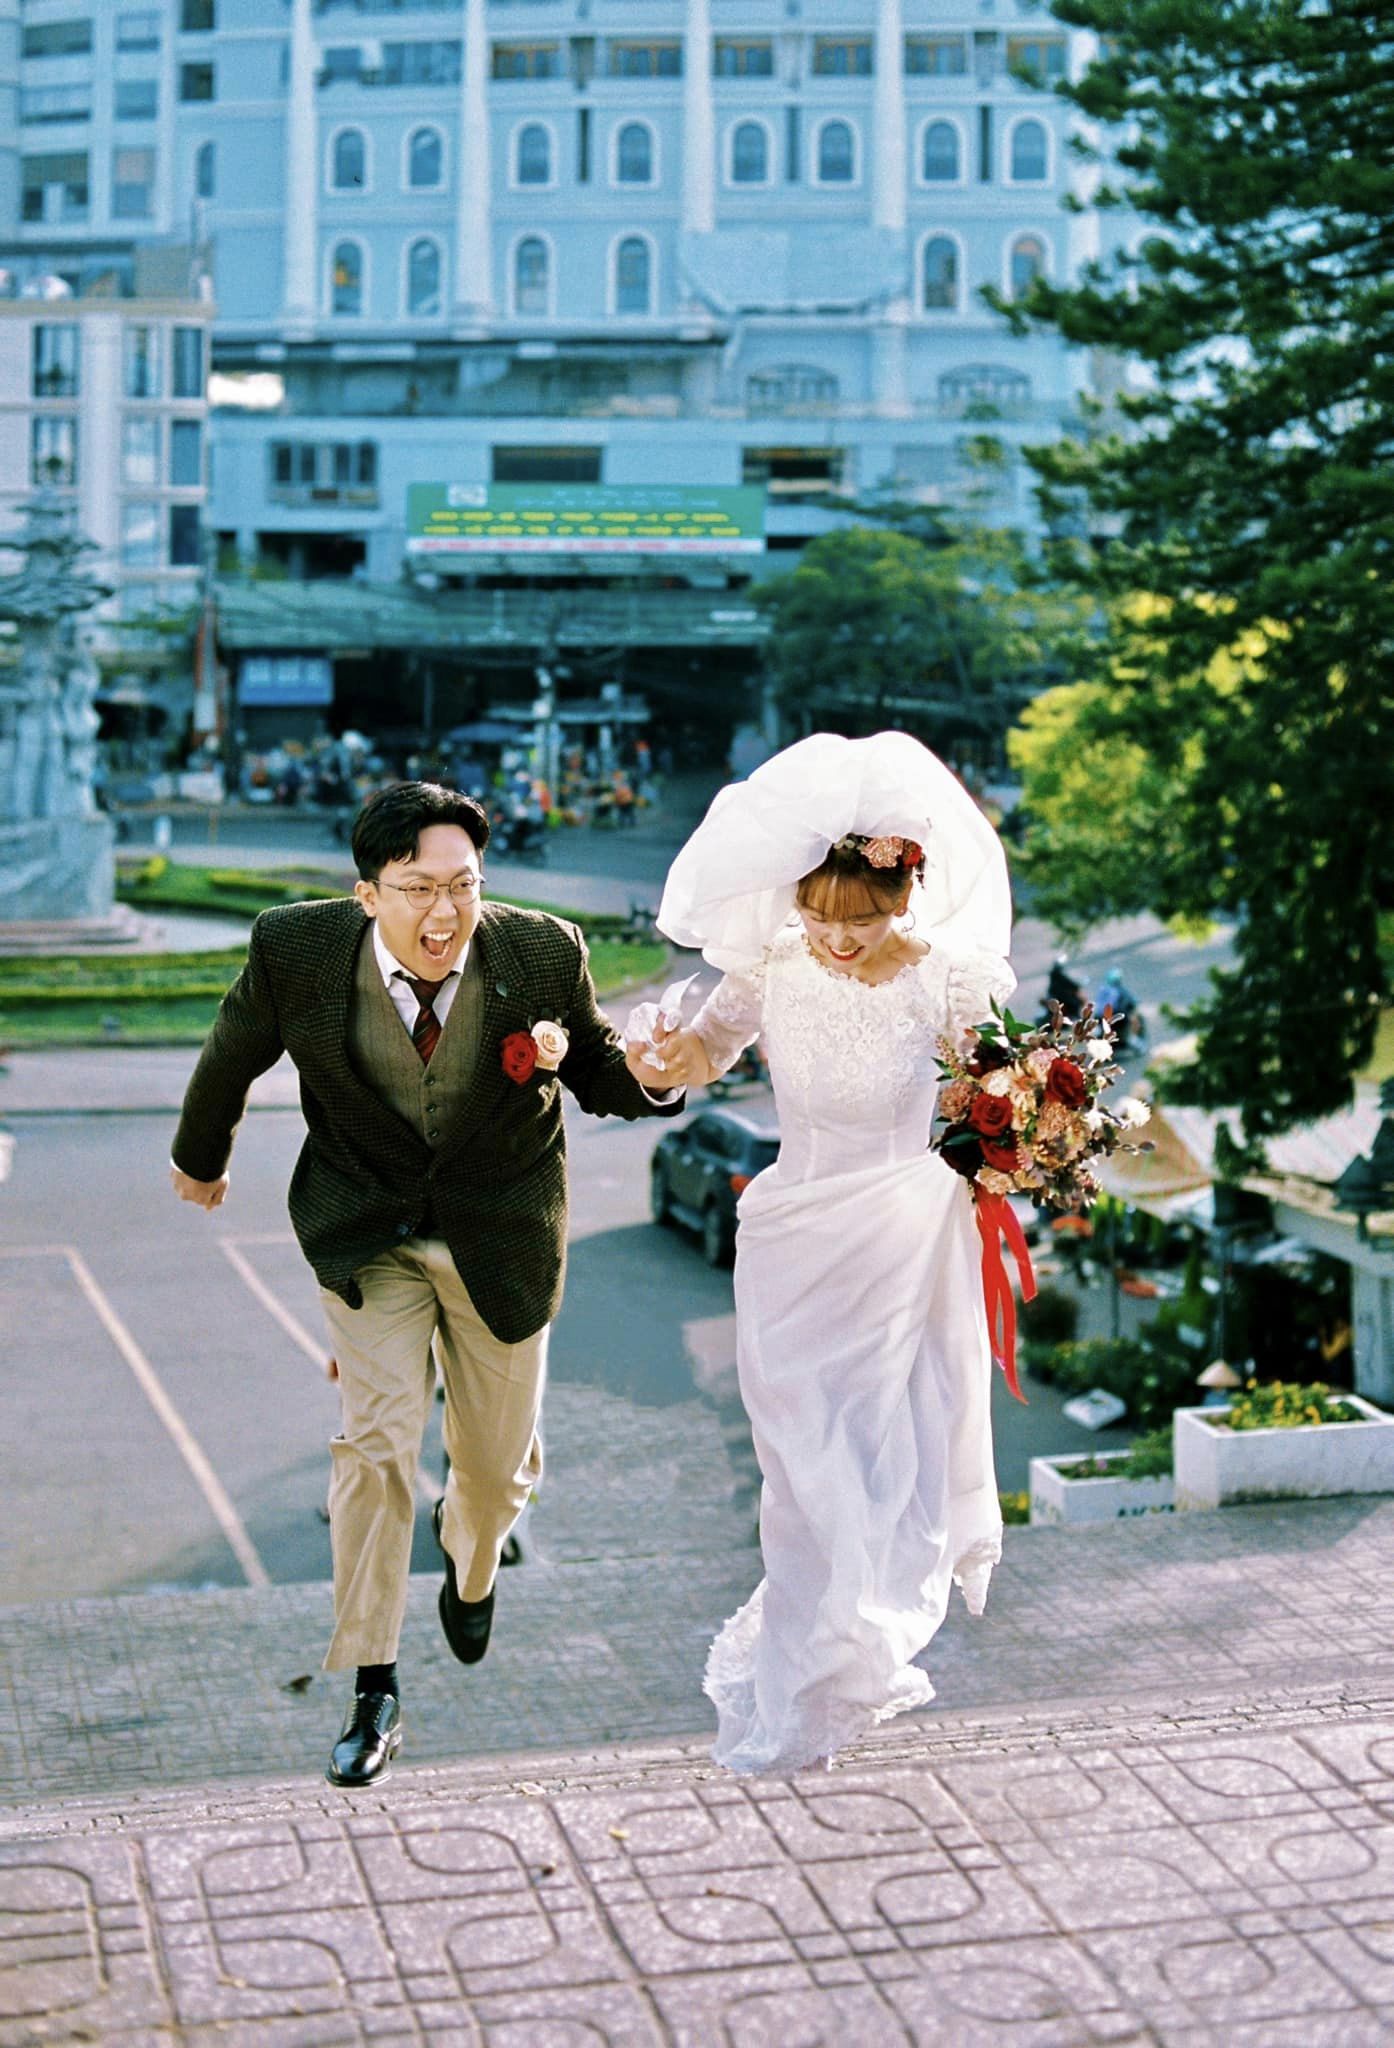 Soi loạt địa điểm Đà Lạt trong bộ ảnh cưới của Trấn Thành - Hari Won: Toàn nơi quen thuộc mà lên ảnh quá 